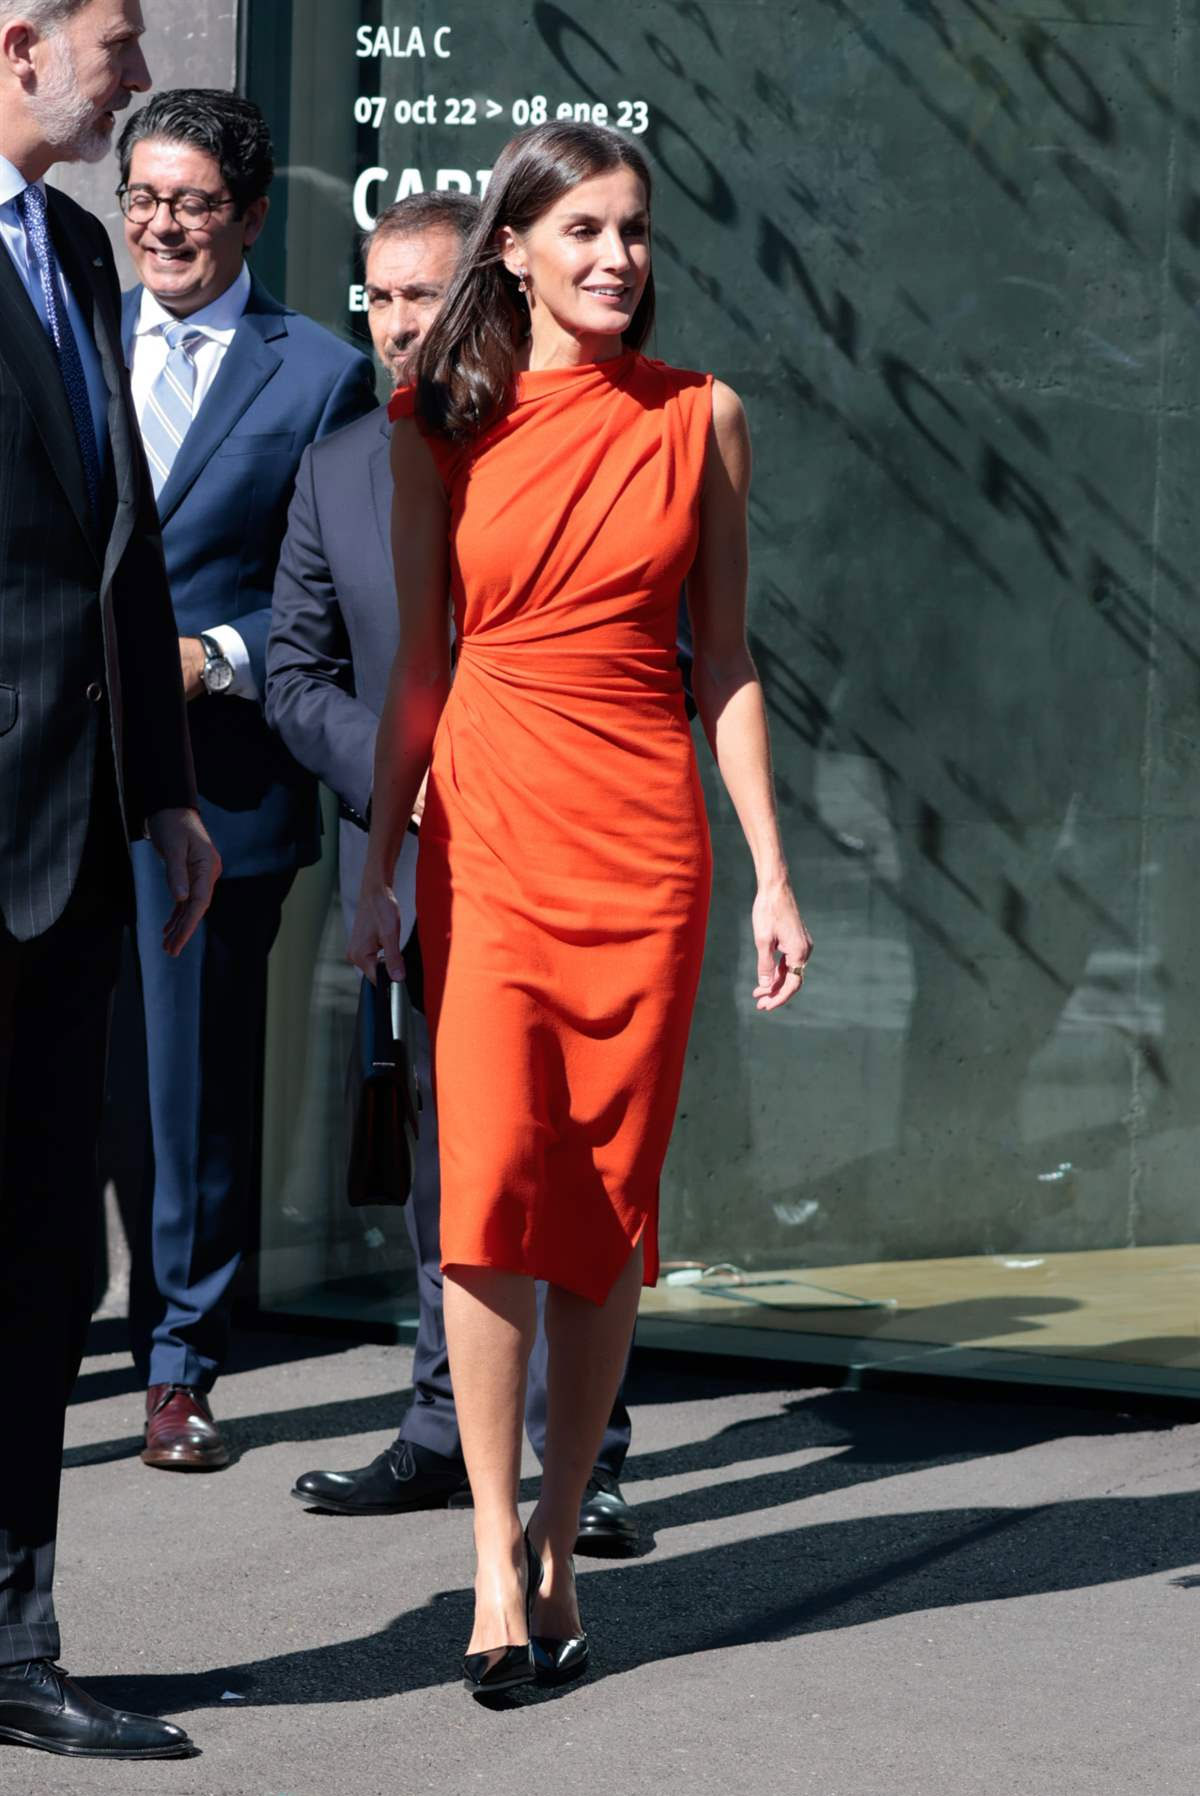 Queen Letizia in orange dress by Zara